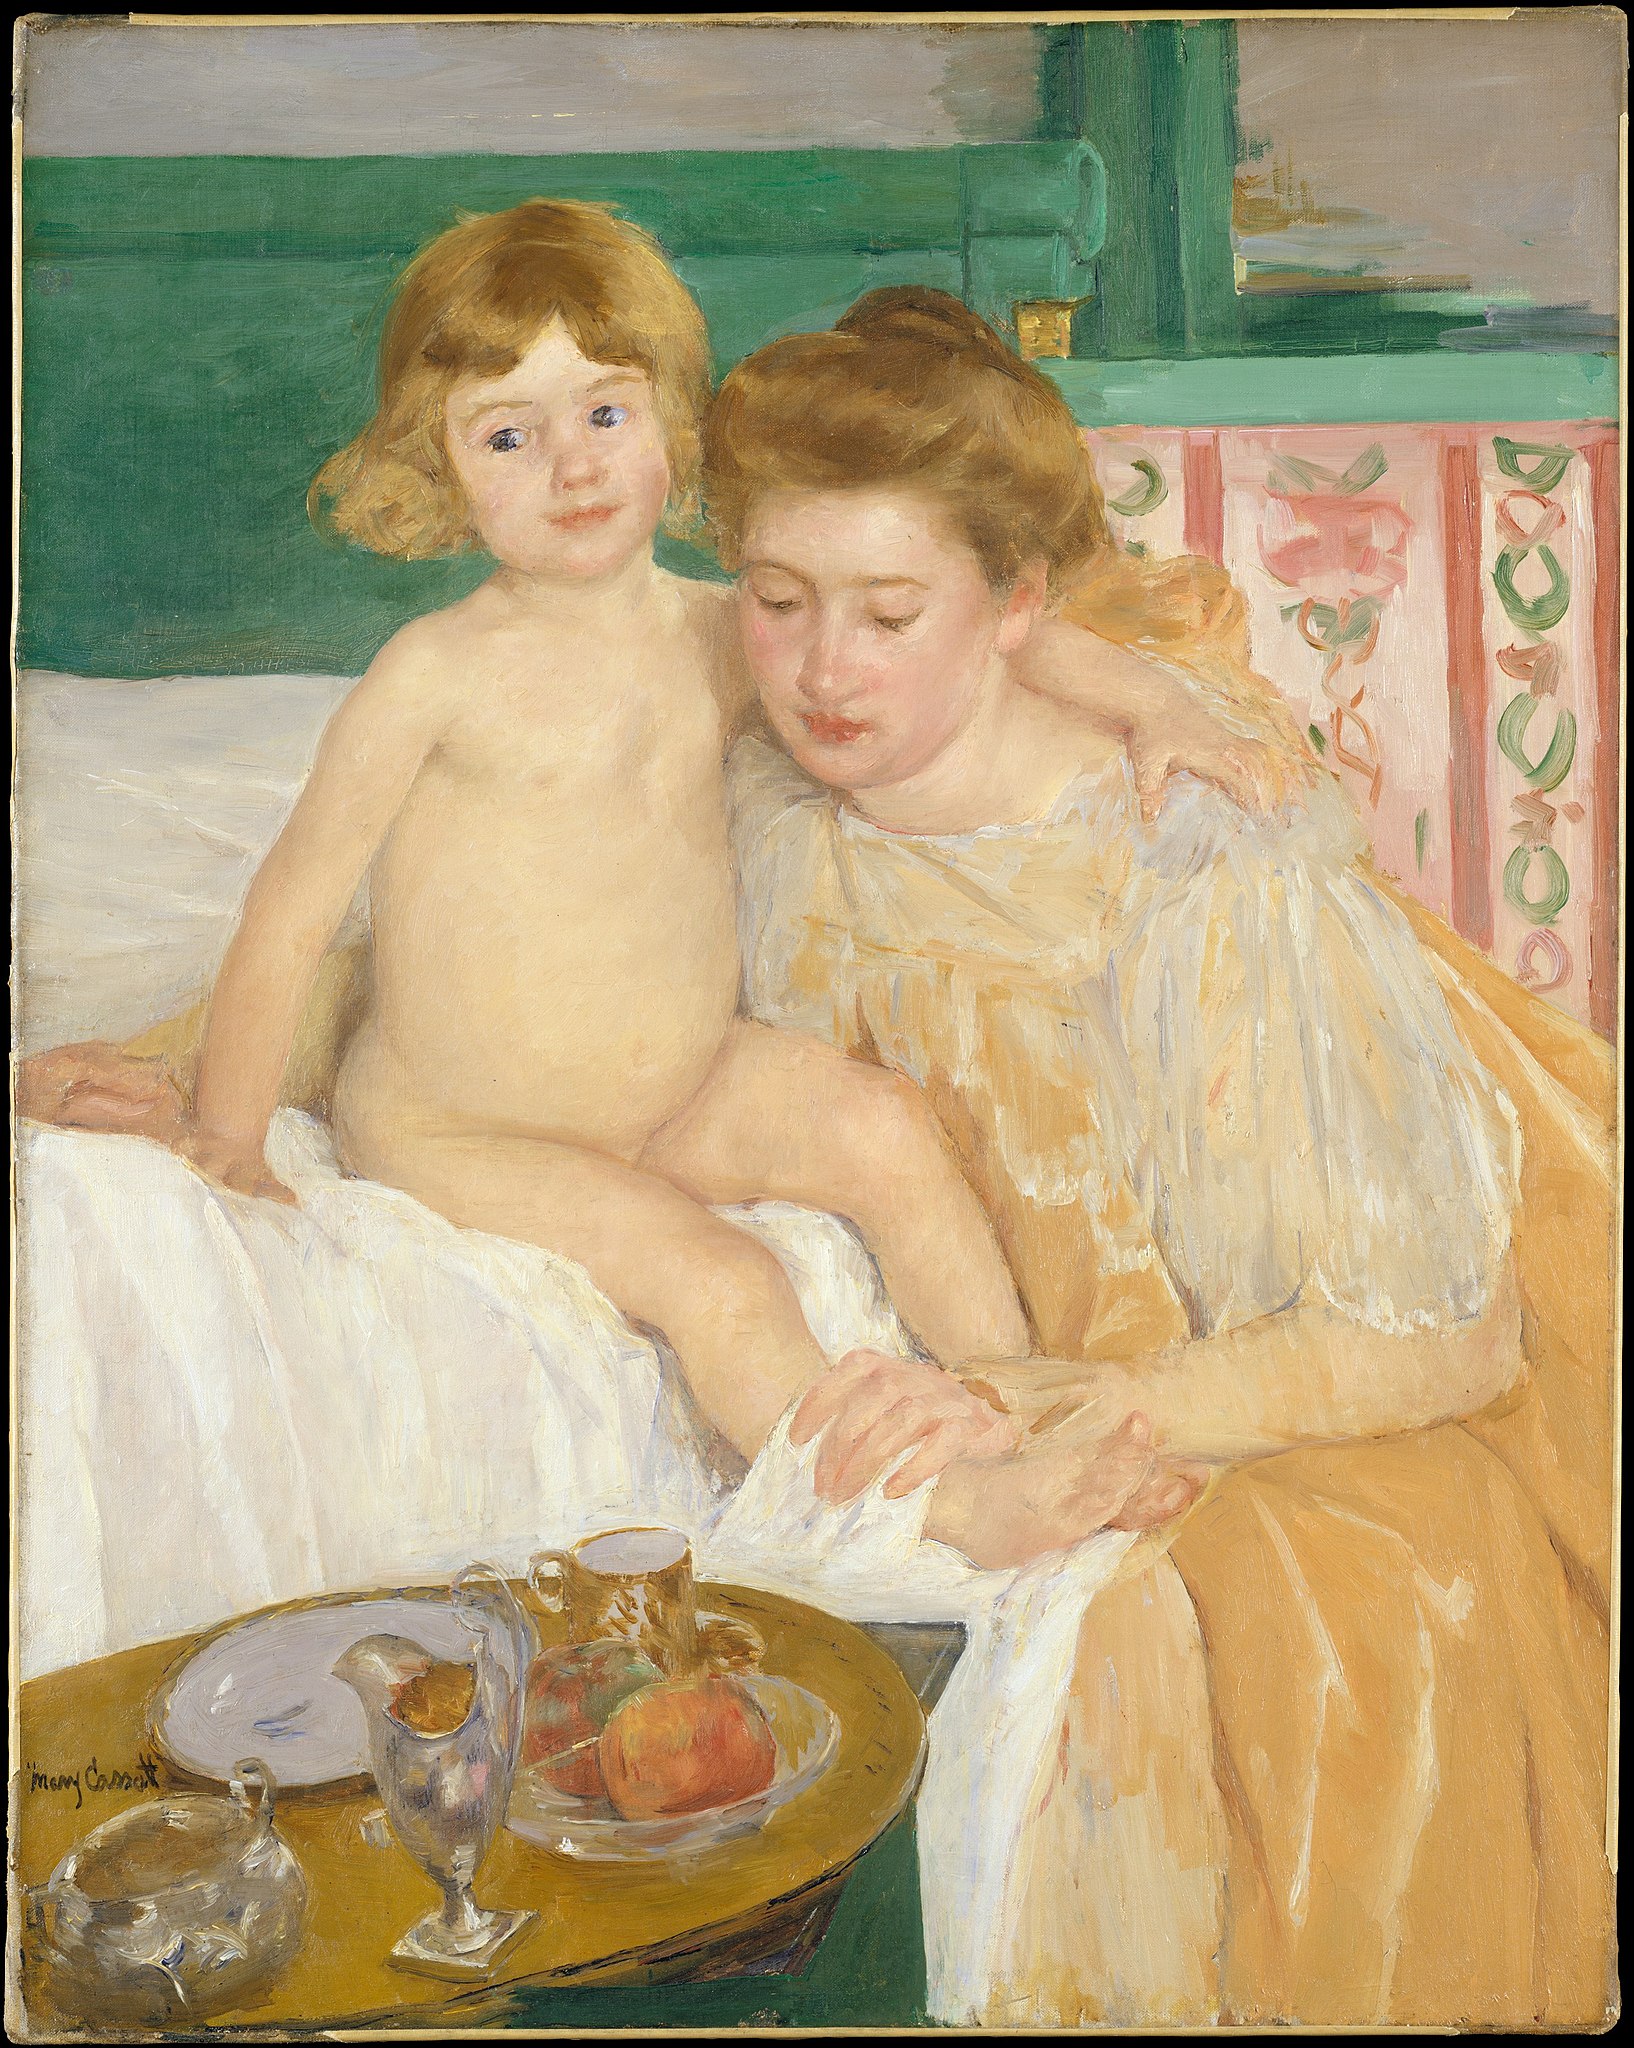 أم و طفل ( طفل يستيقظ من قيلولته) by Mary Cassatt - 1899 - الأبعاد 73.7 × 92.7 